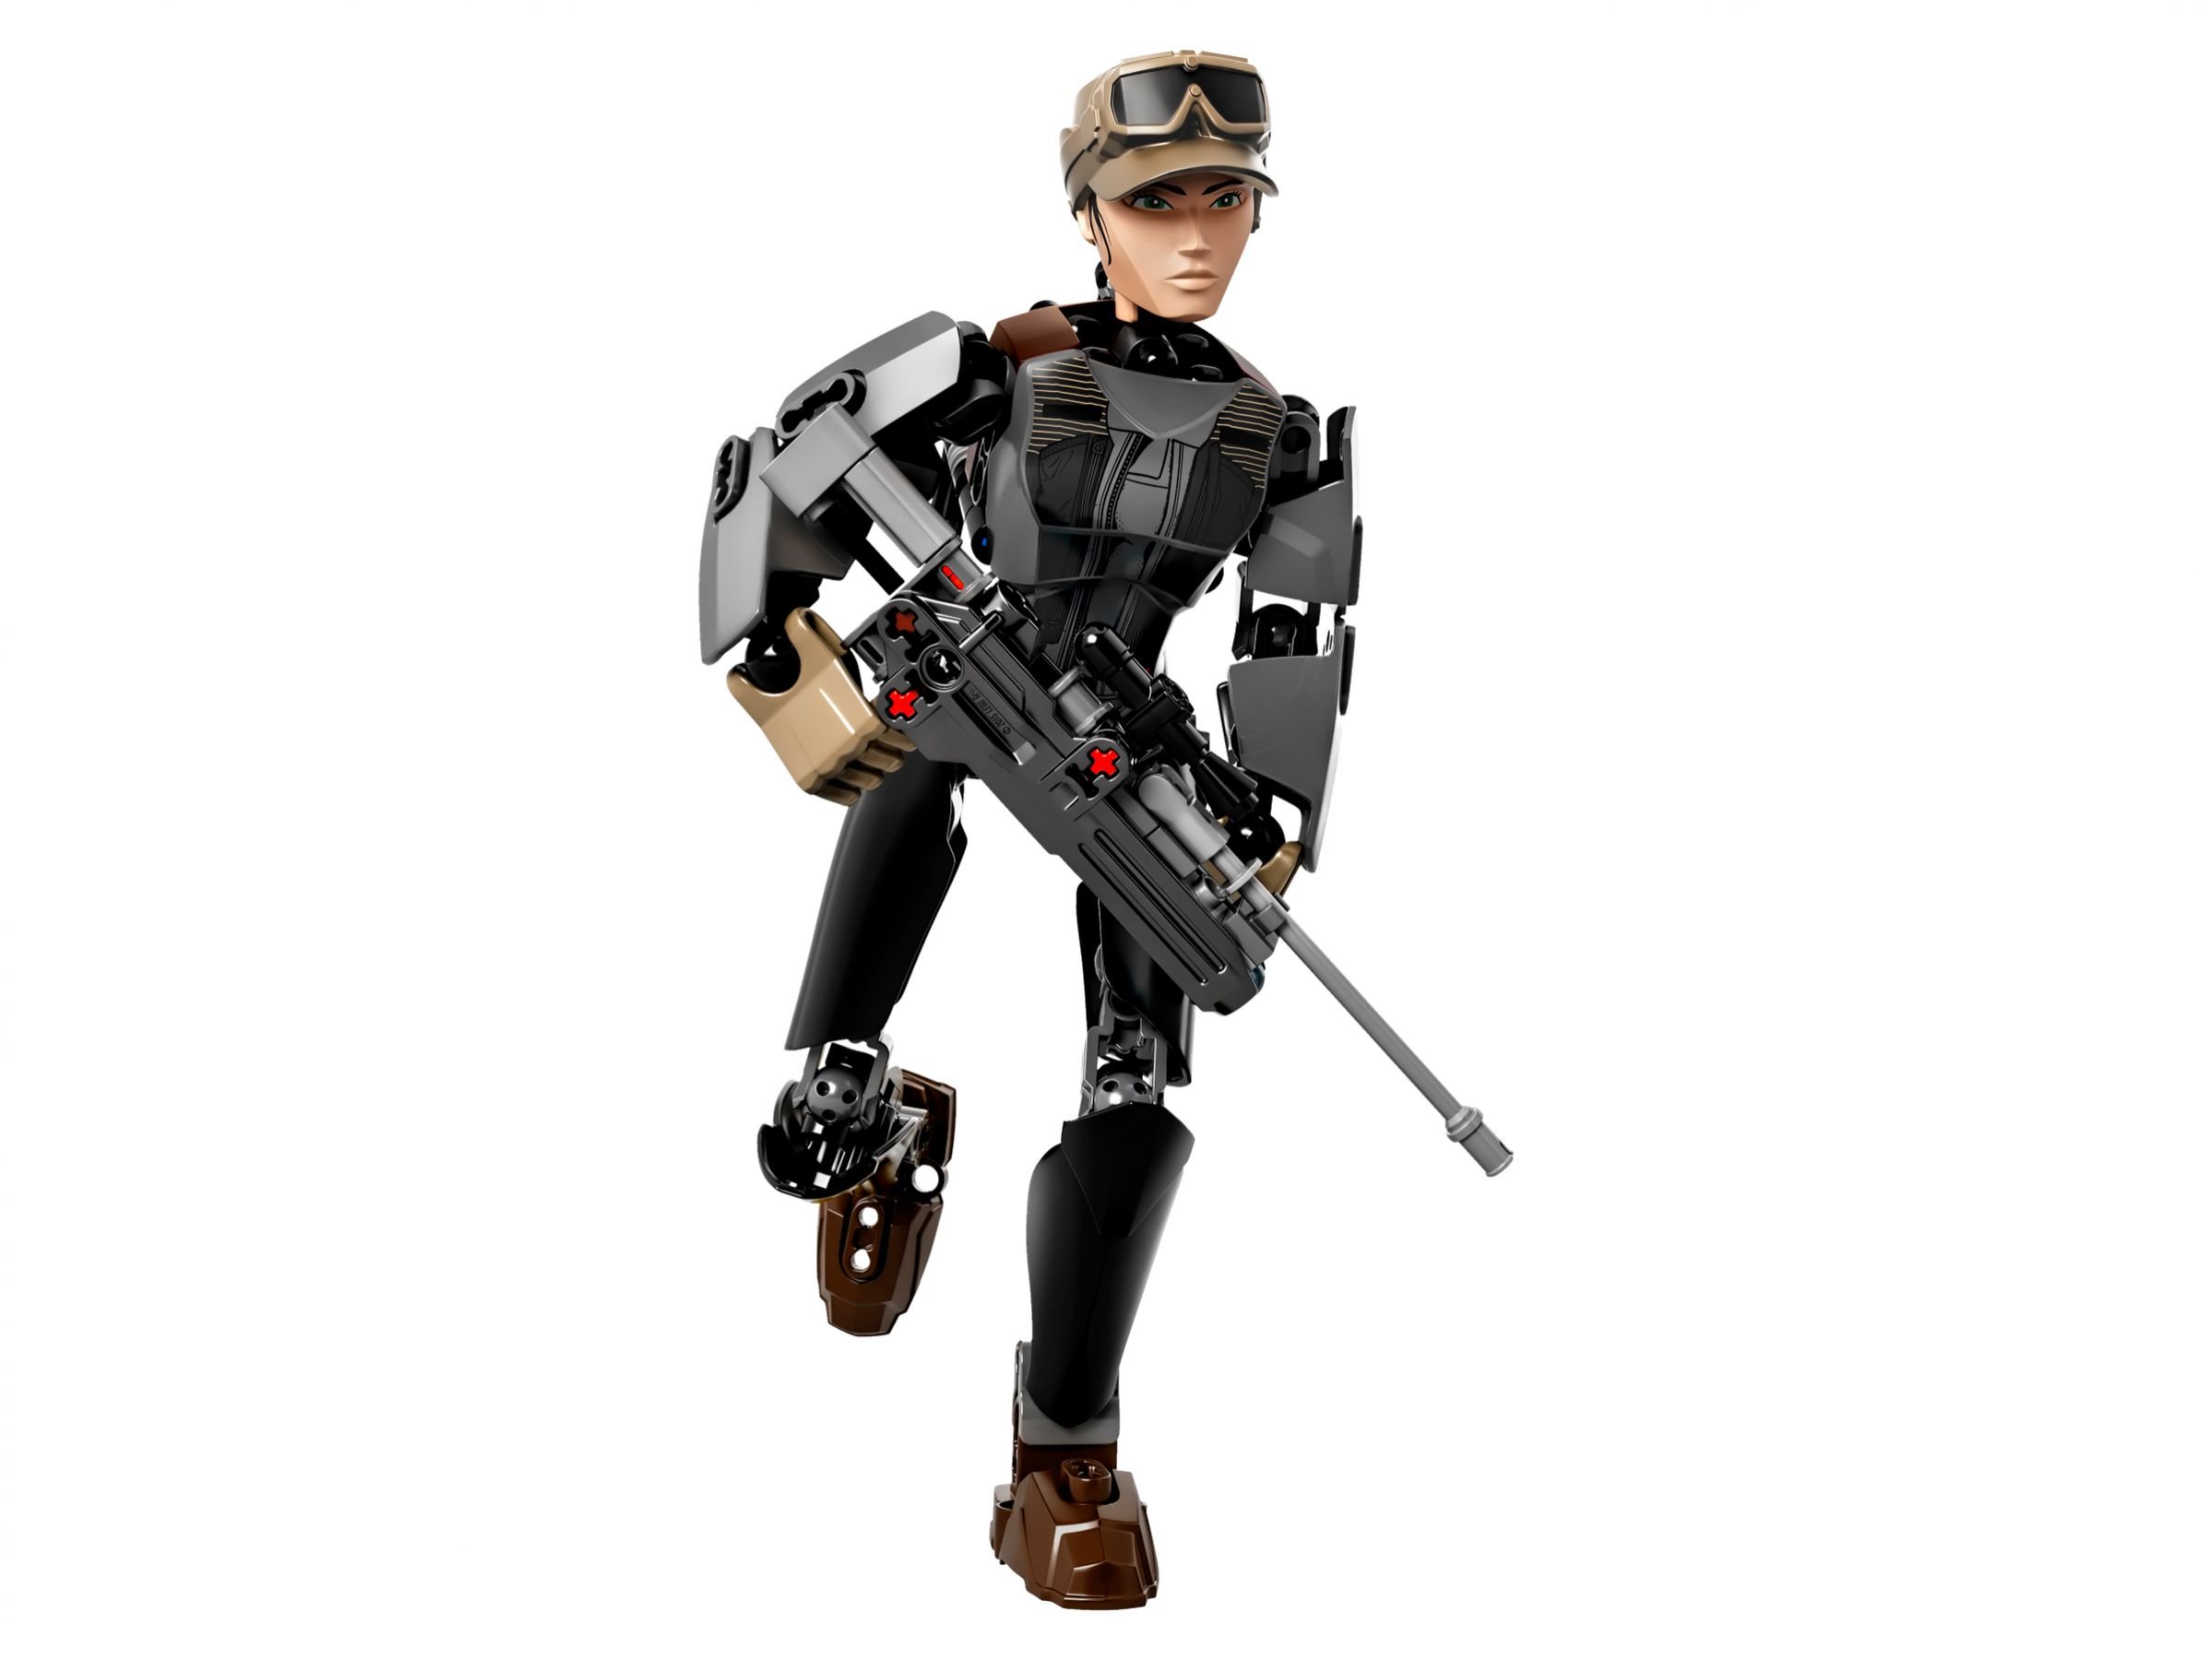 LEGO Star Wars Buildable Figures 75119 Sergeant Jyn Erso™ LEGO_75119_alt2.jpg